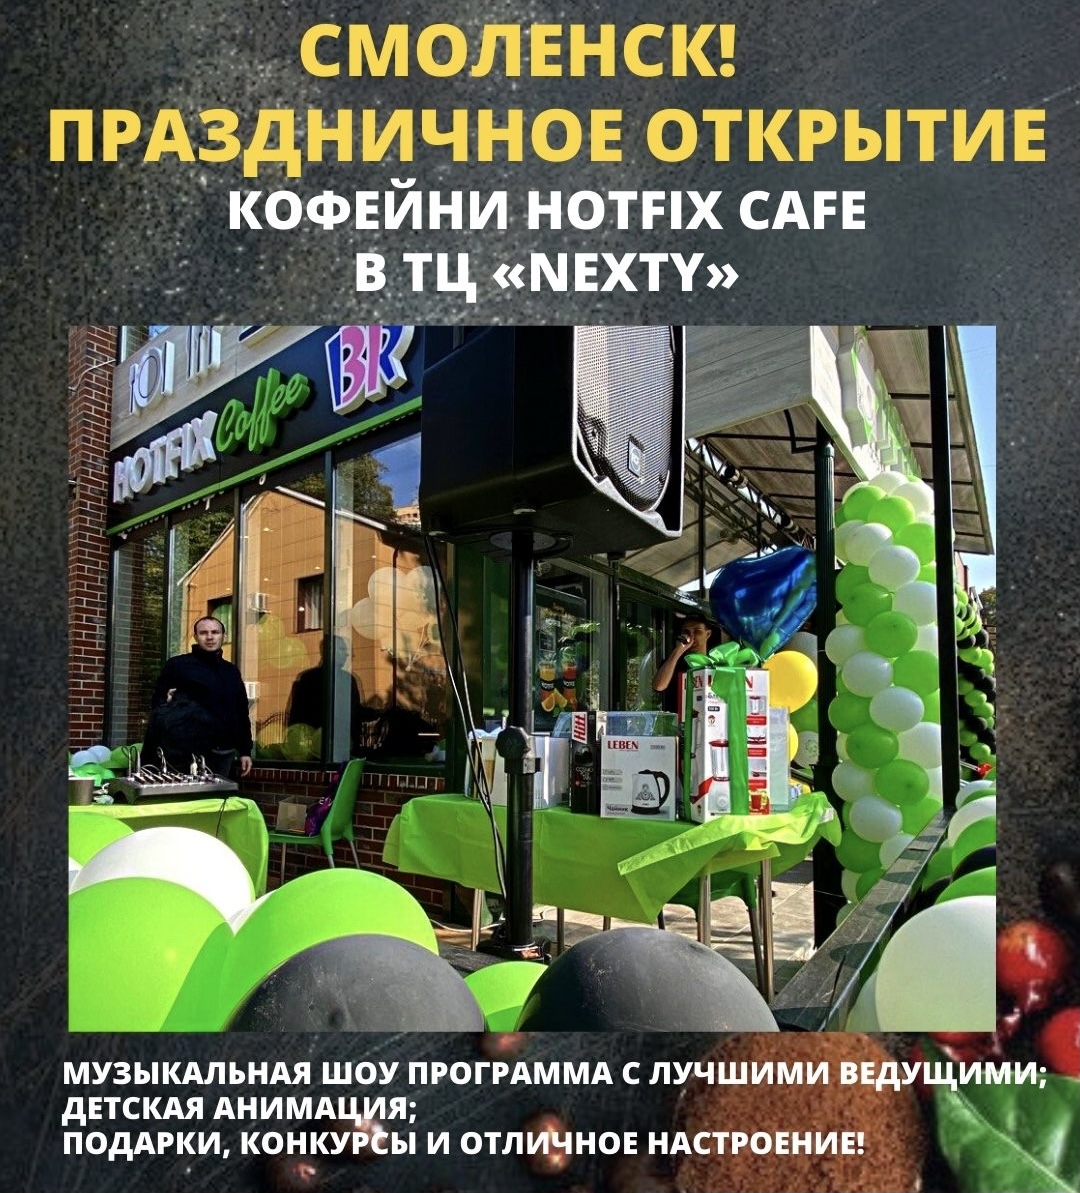 Праздничное открытие кофейни Hotfix coffee в Смоленске, ТЦ «NEXTY»